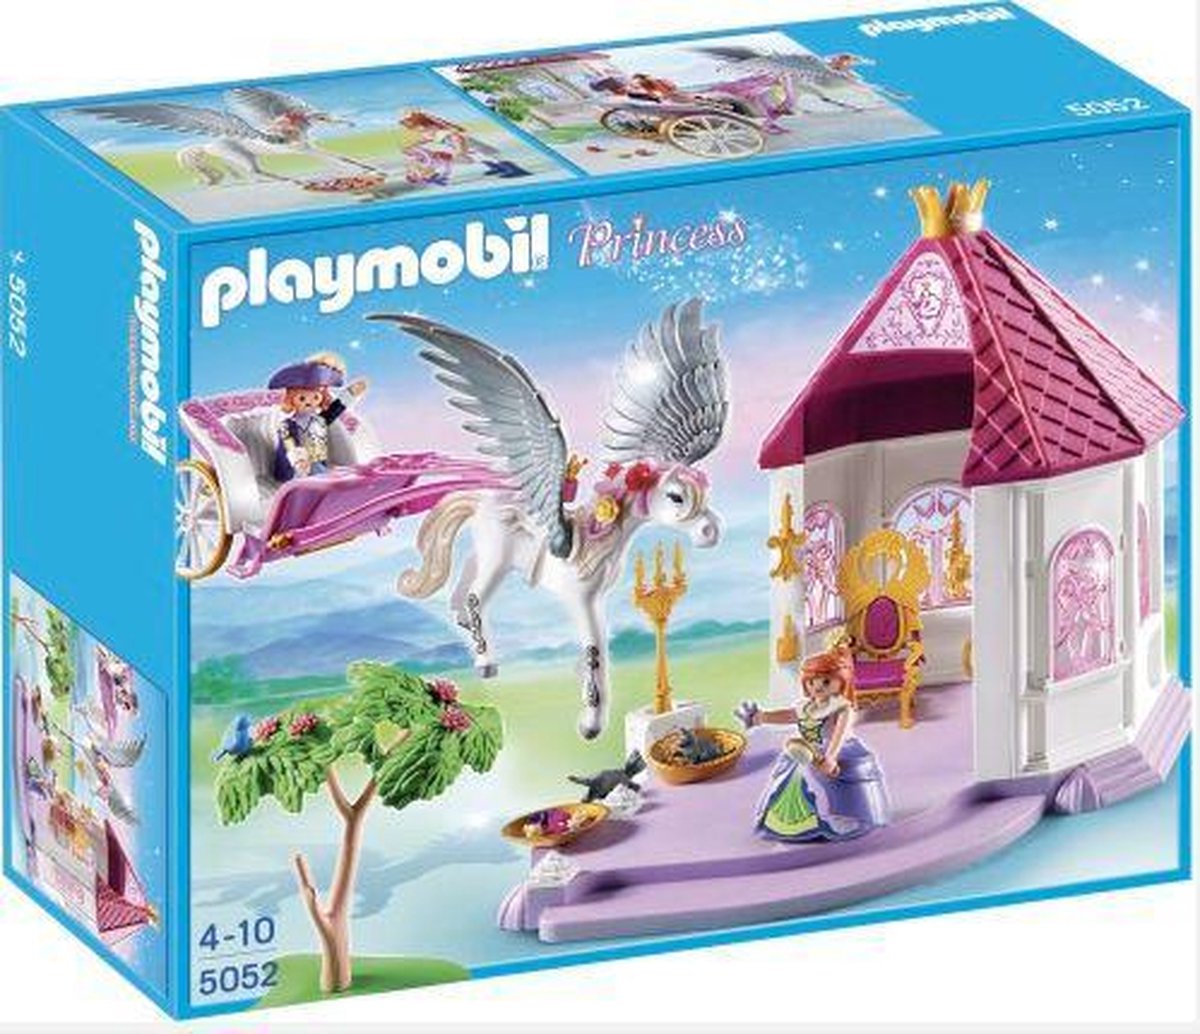 Playmobil Pegasus paard met Koningspaar - 5052 | bol.com